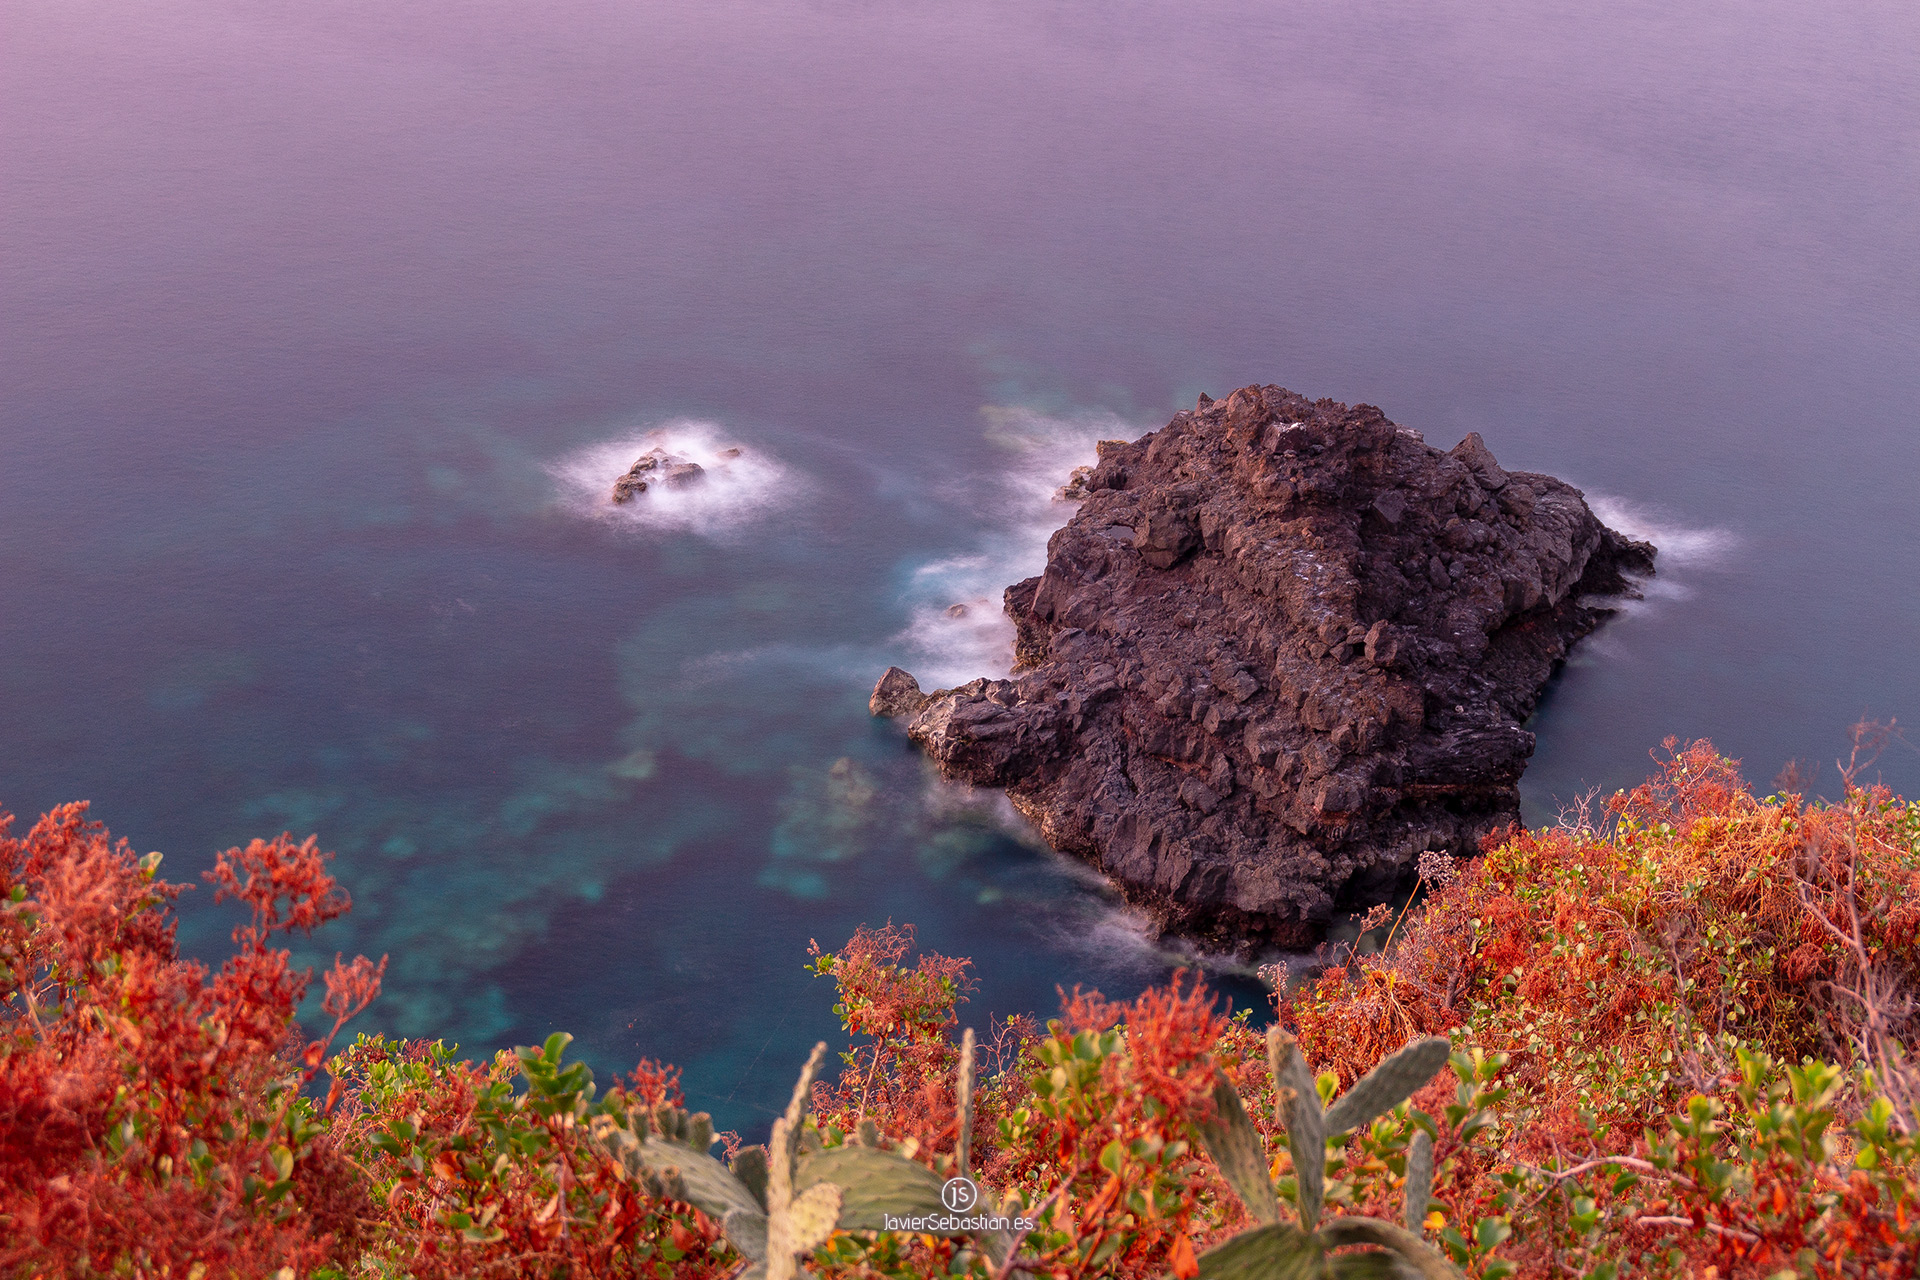 Fotografía larga exposición de roca y mar en La Palma · JavierSebastian en Steemit